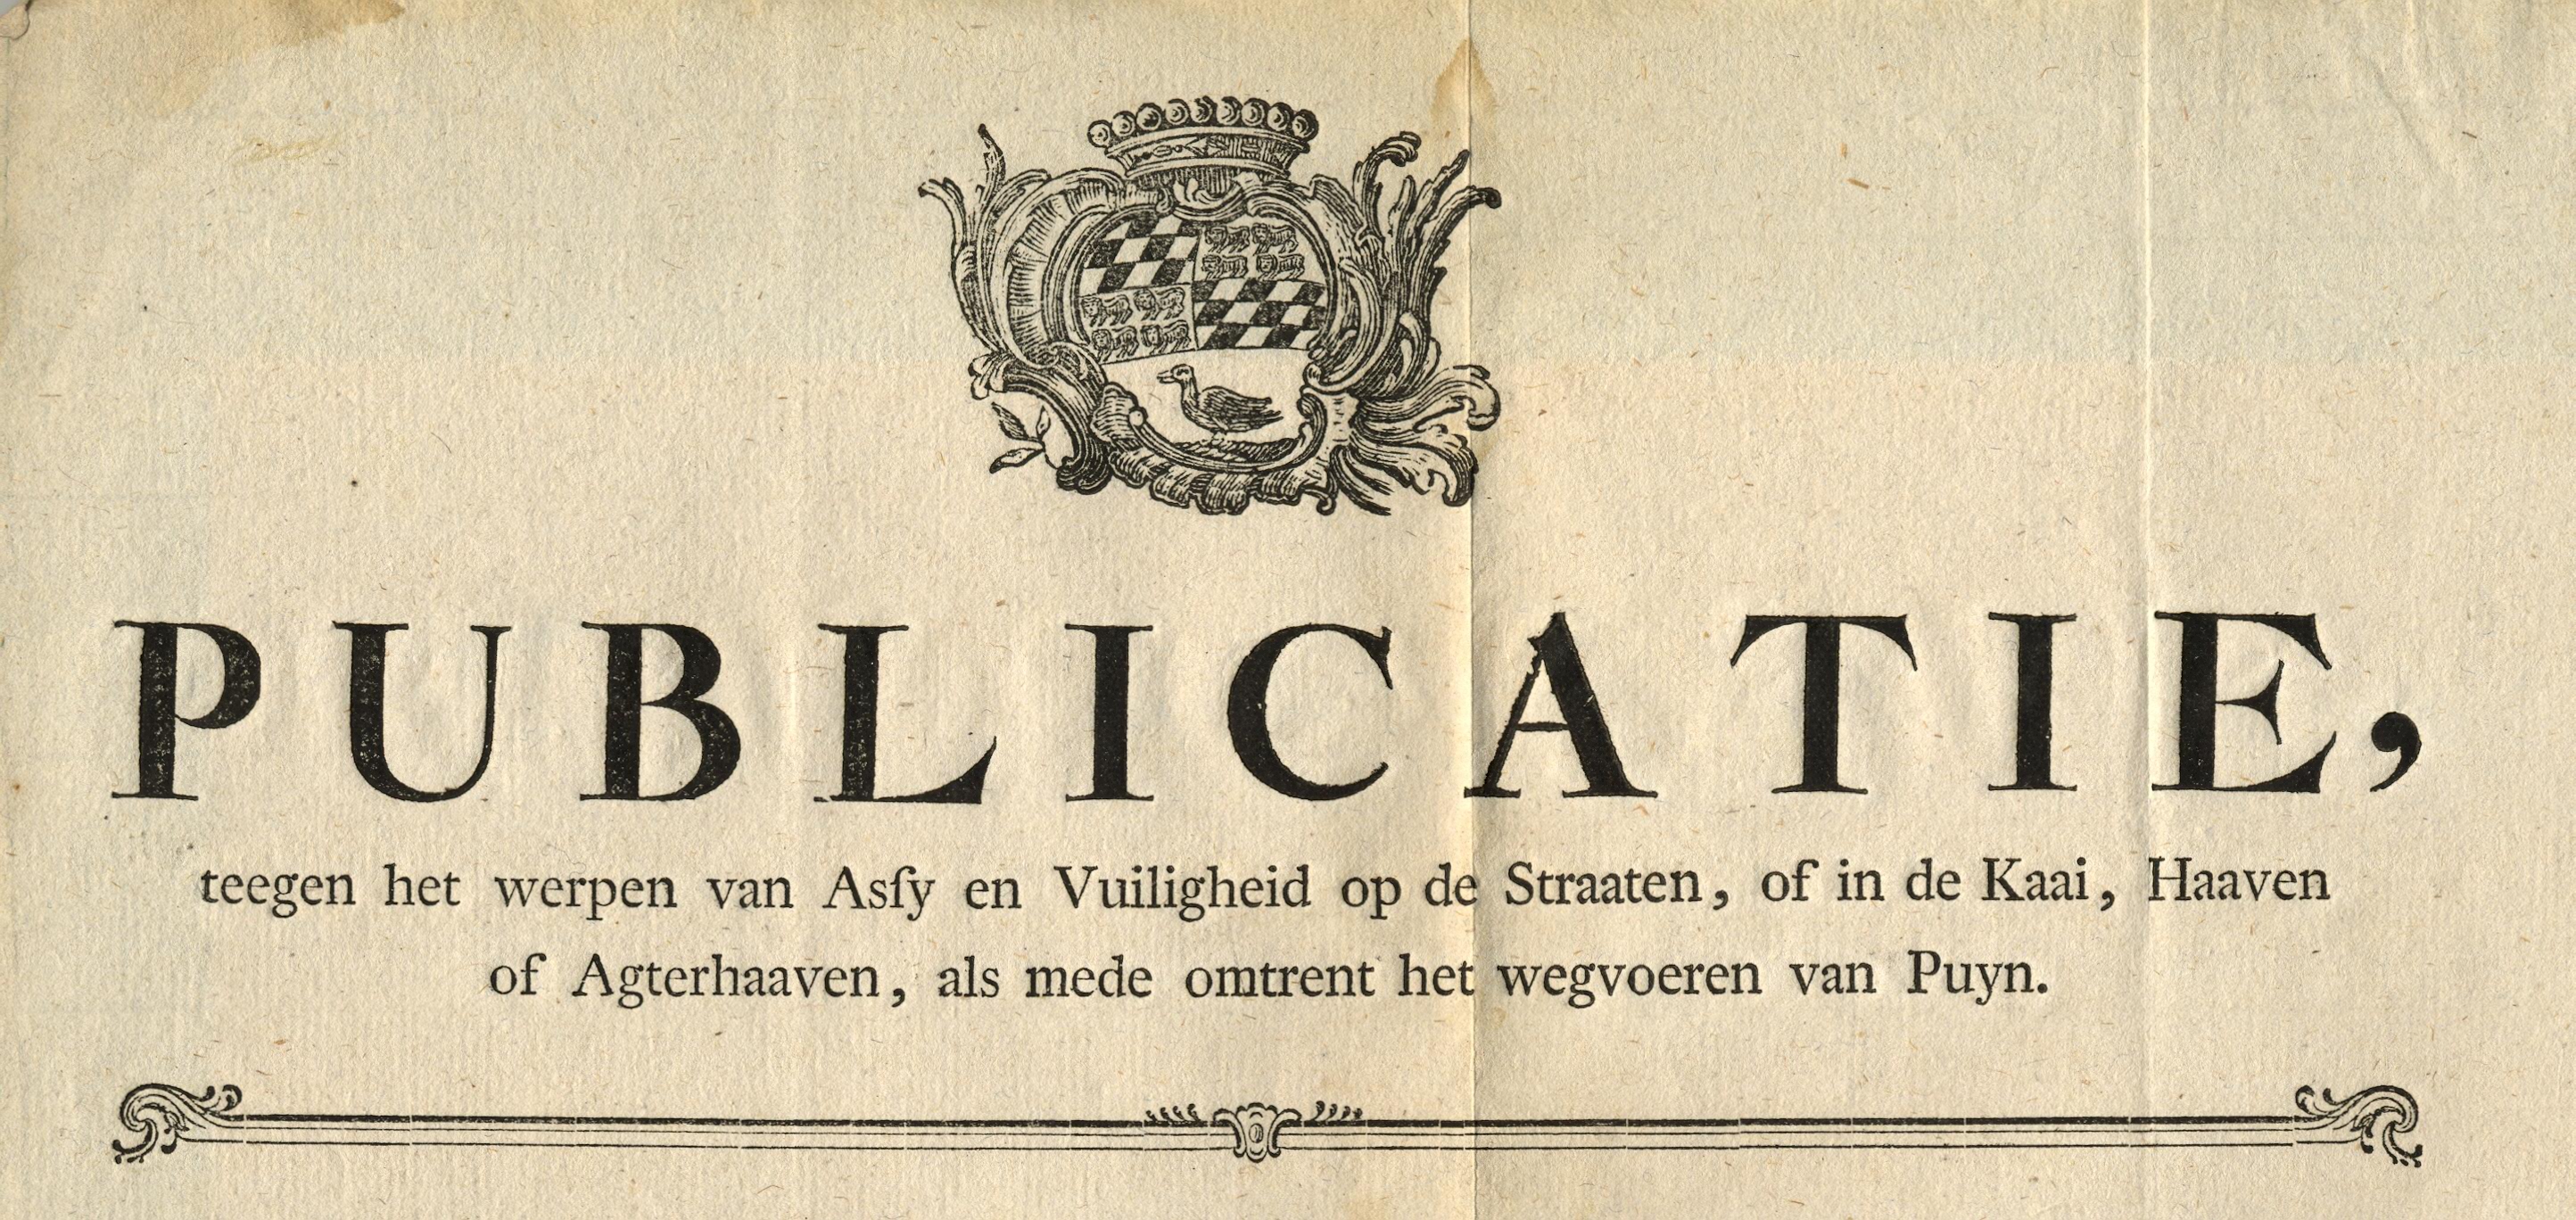 Publicatie tegen het werpen van vuil op straat, 1789.